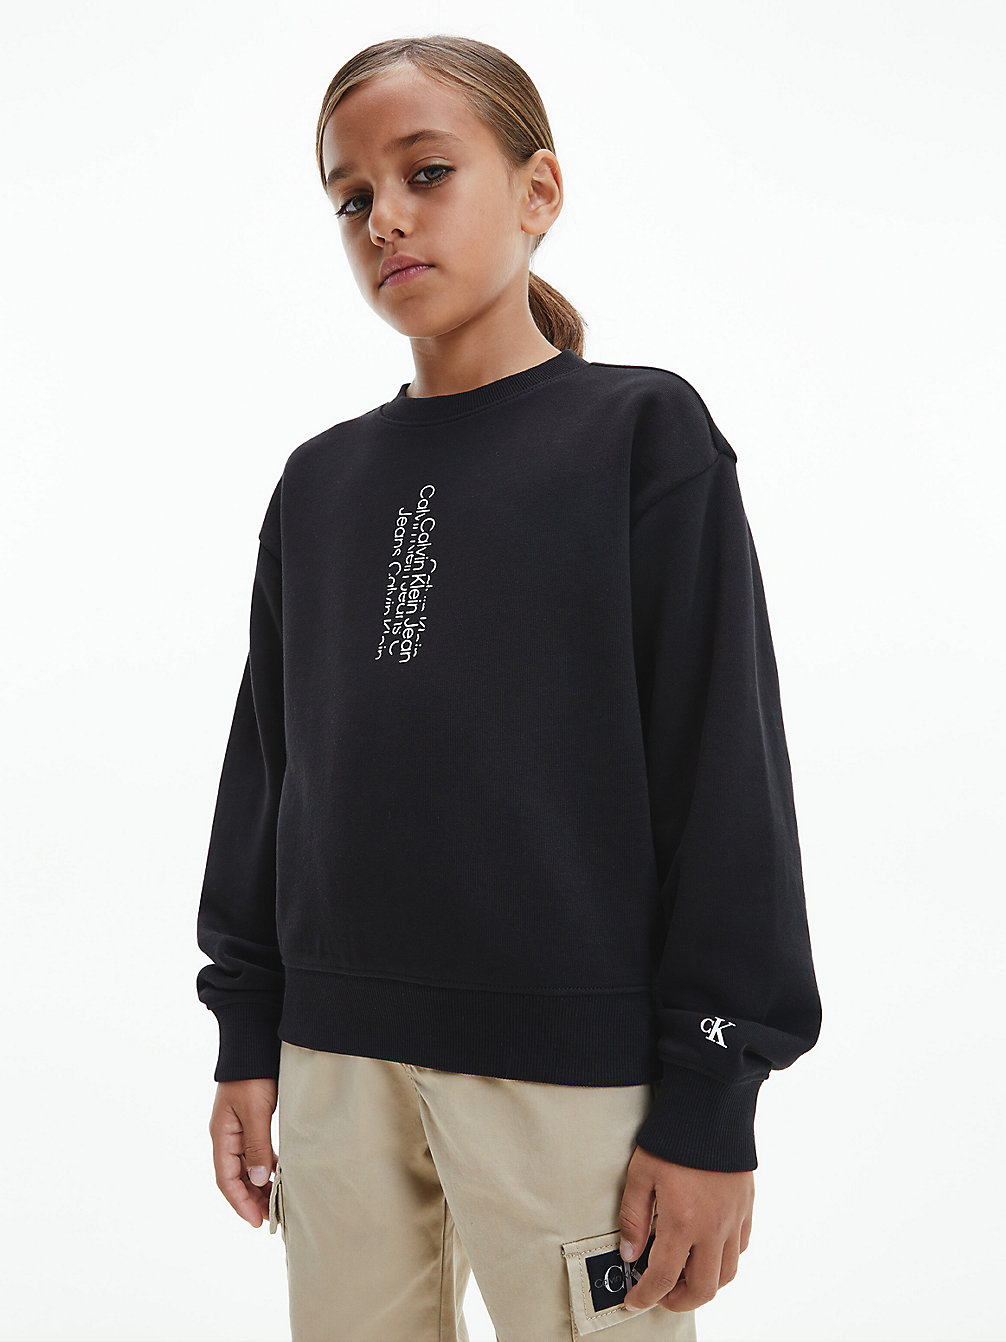 CK BLACK > Logo-Sweatshirt > undefined boys - Calvin Klein